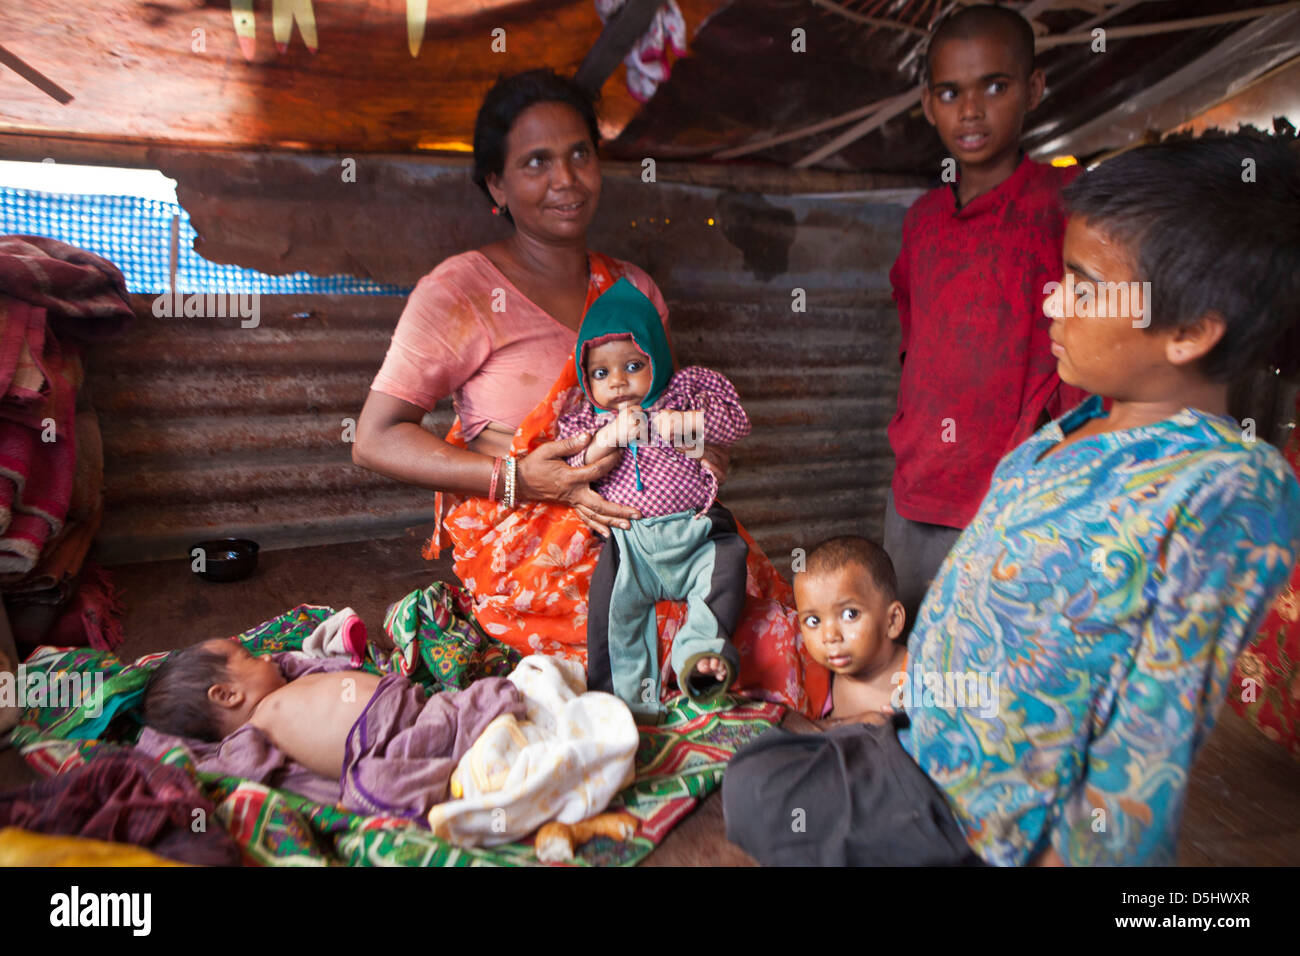 Moth népalais est titulaire d'un de ses enfants dans sa maison, dans la favela de Kankeshori domaine de Katmandou, Népal. Banque D'Images